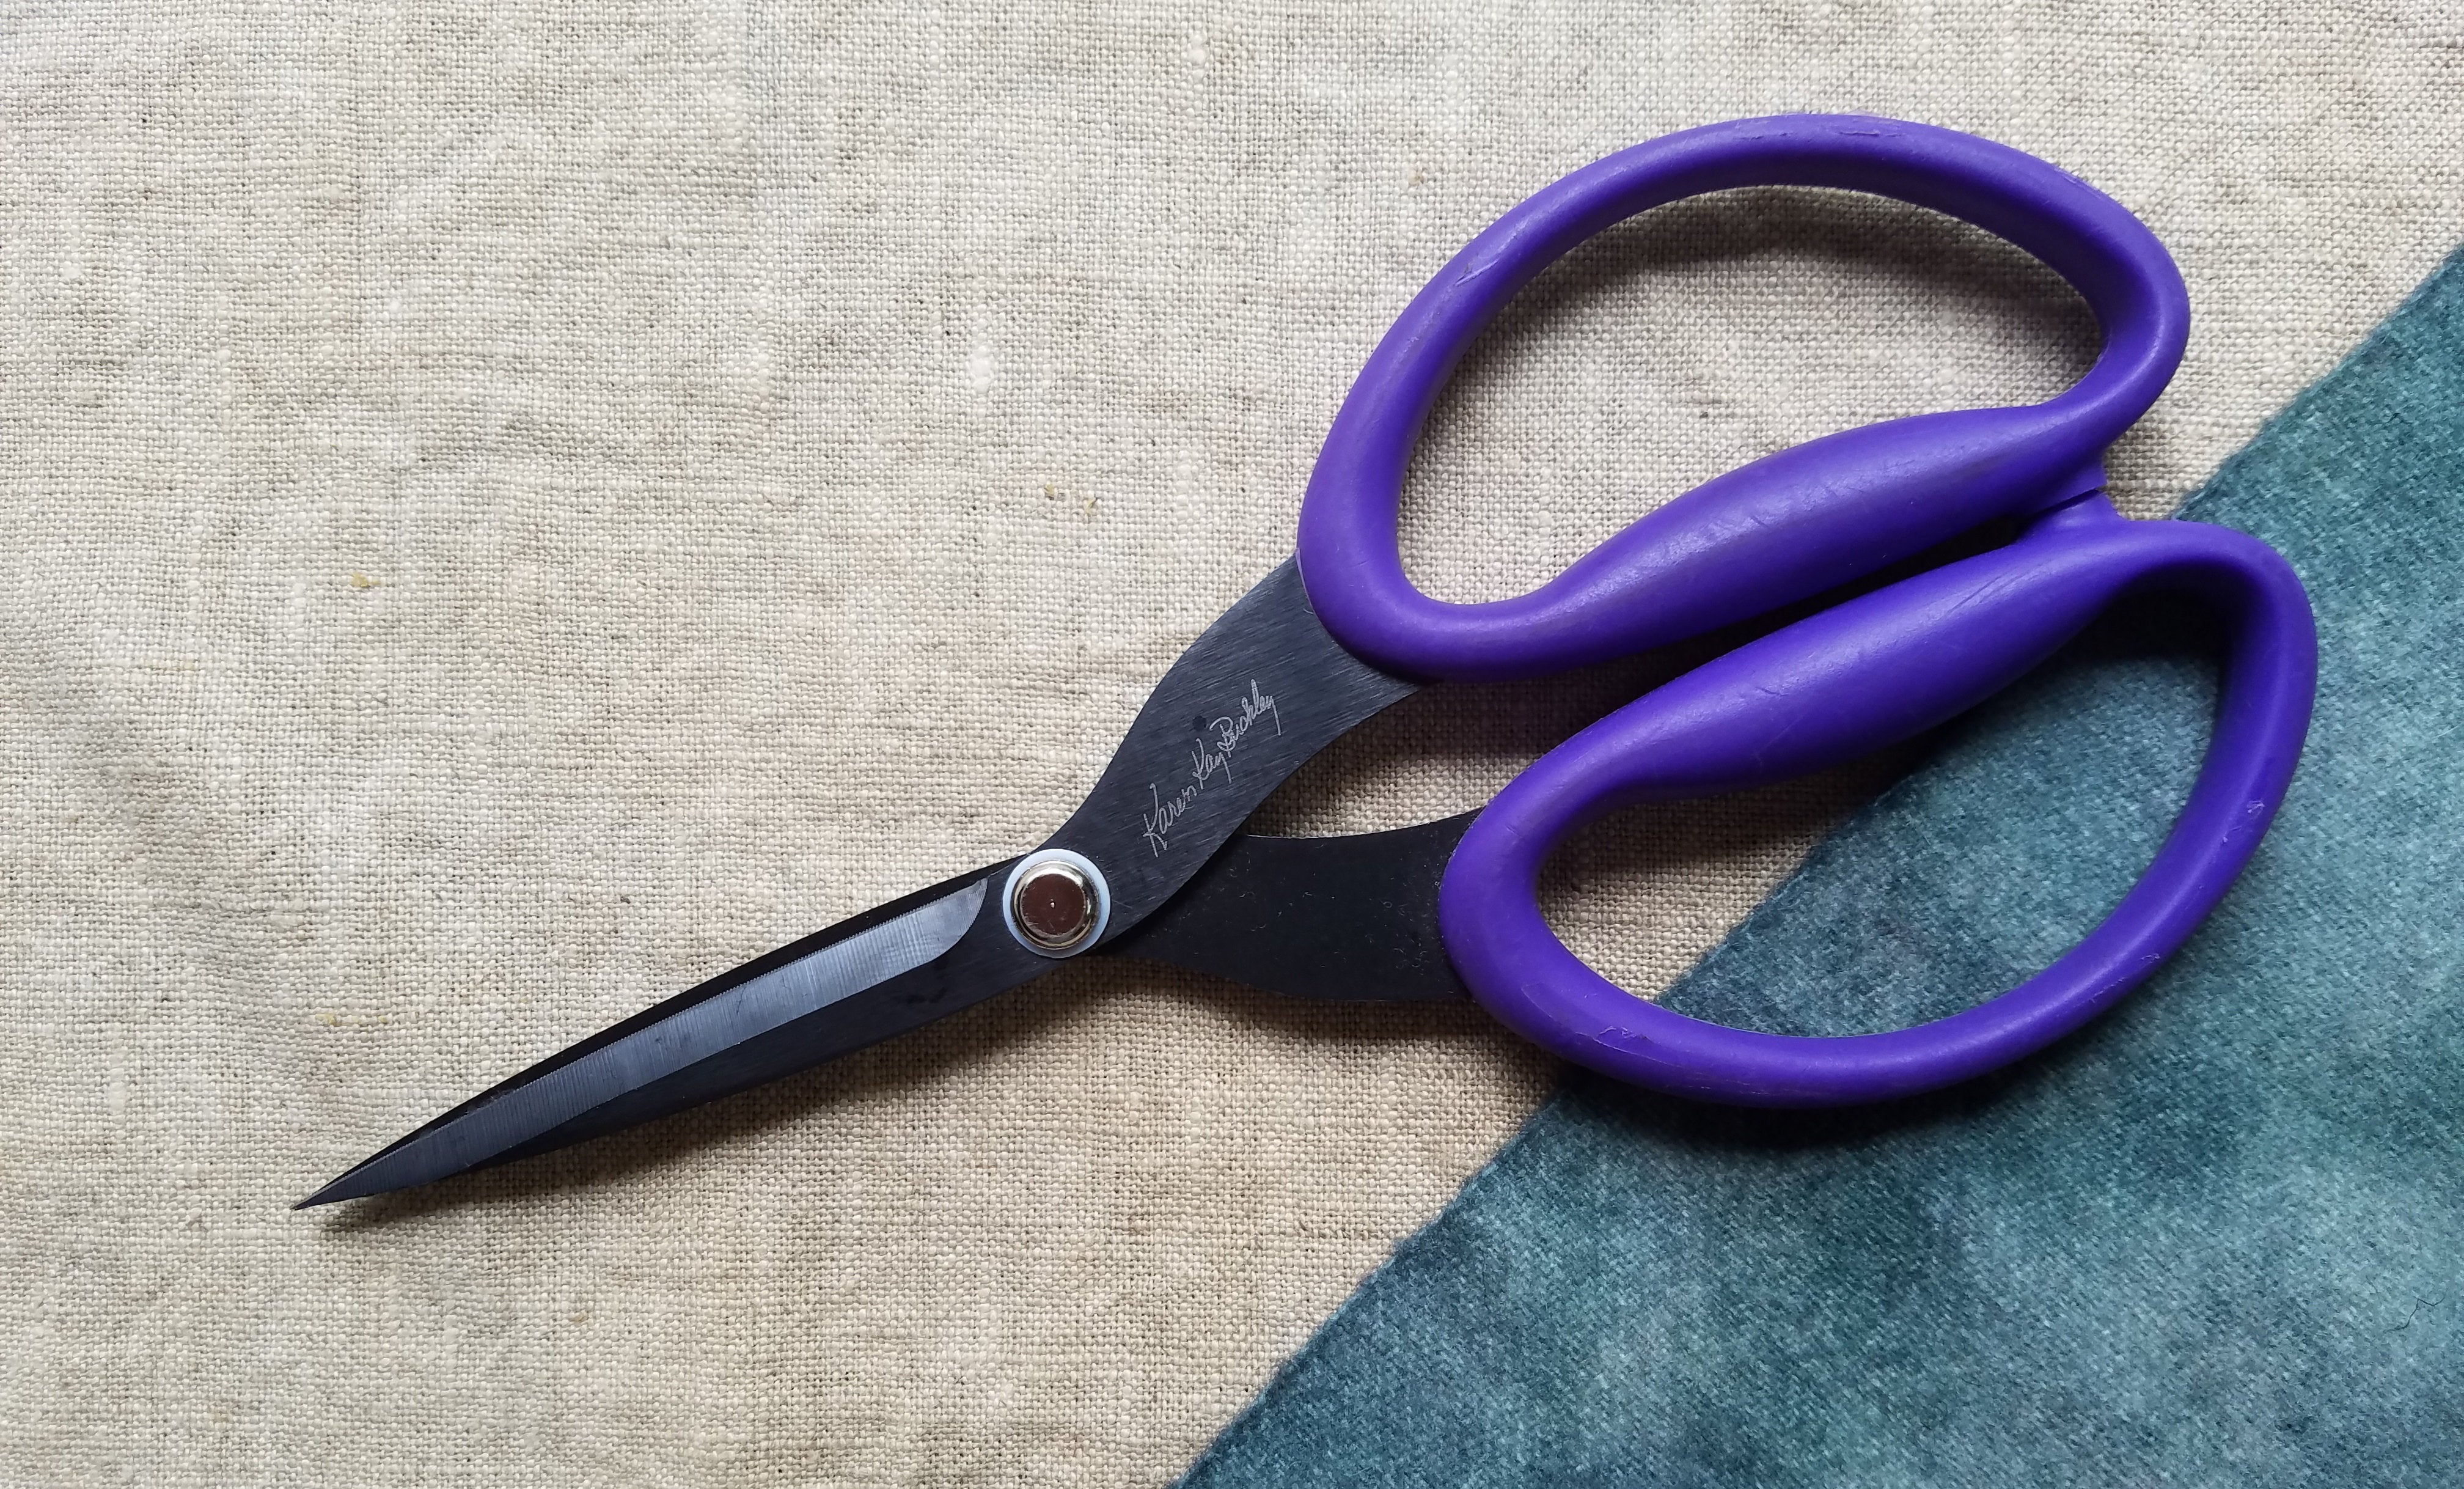 Scissors - Karen K. Buckley Perfect Scissors - Large 7 1/2 - Purple